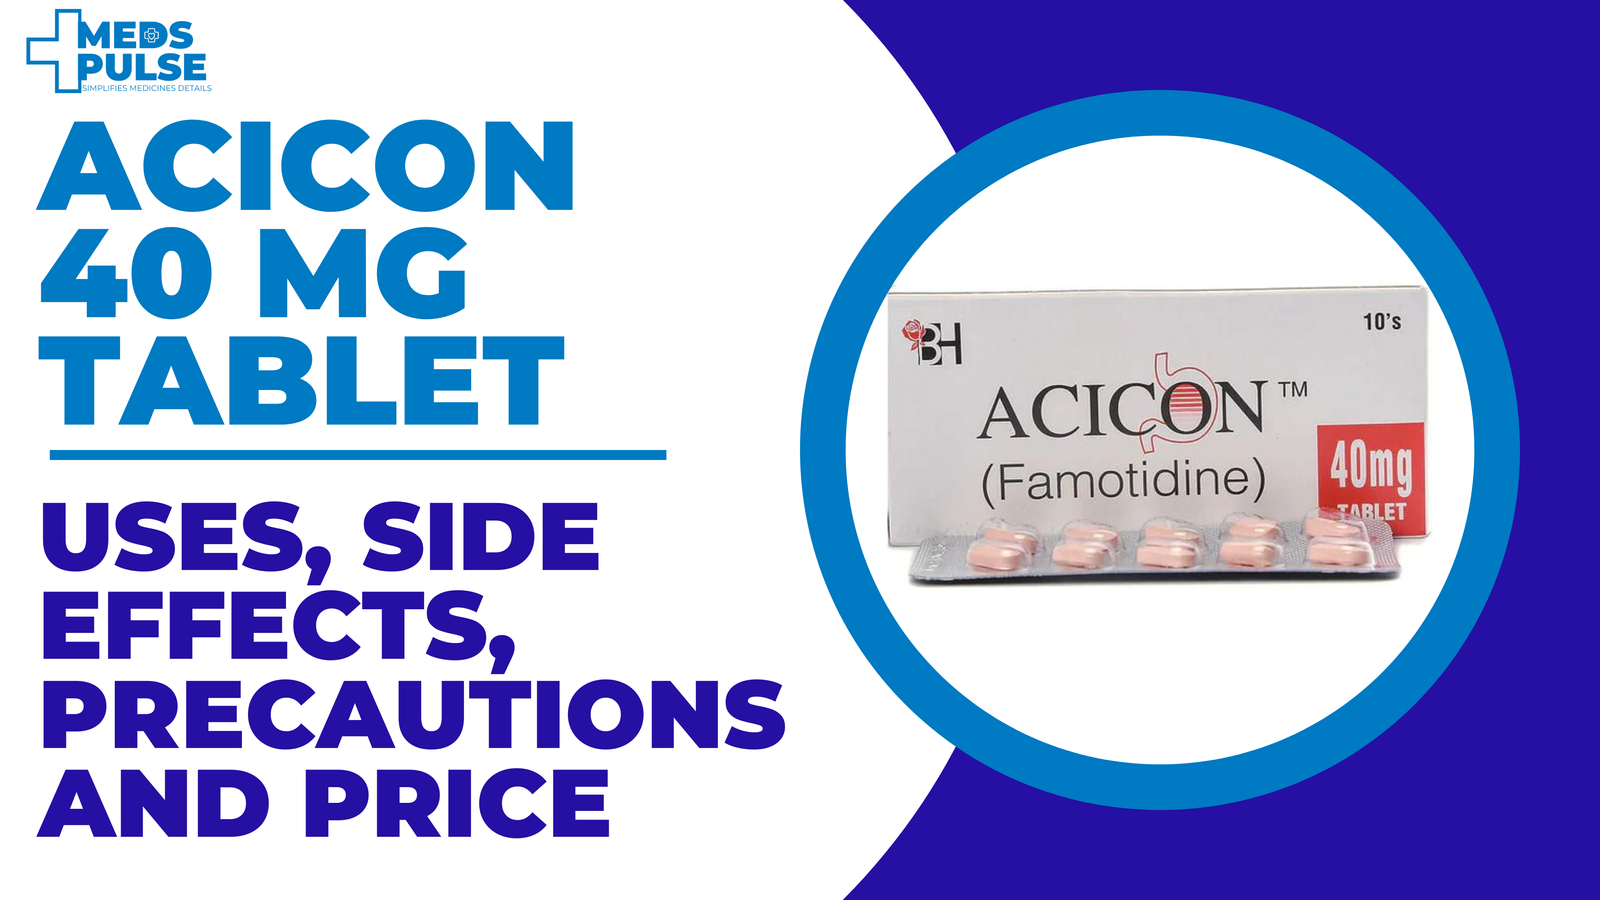 Acicon 40 mg tablet